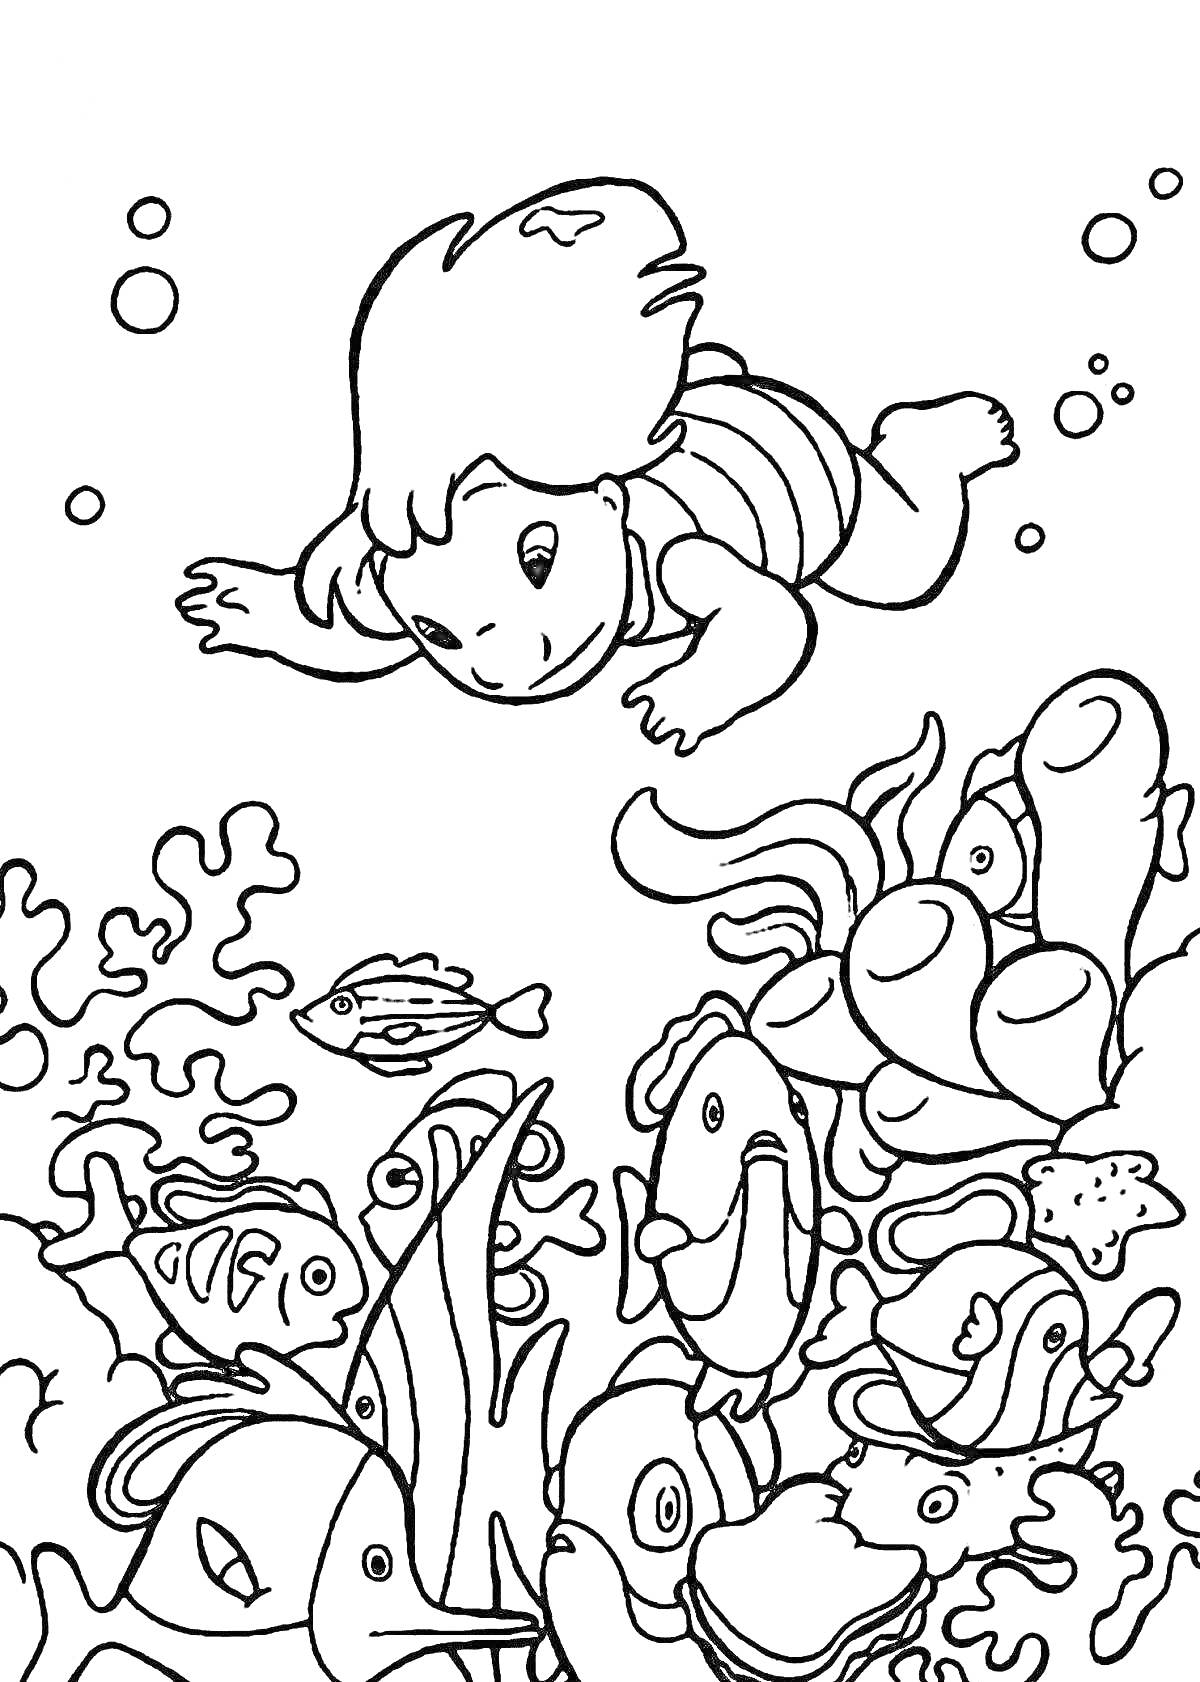 Раскраска Ребенок в полосатой футболке плавает под водой среди рыб и кораллов